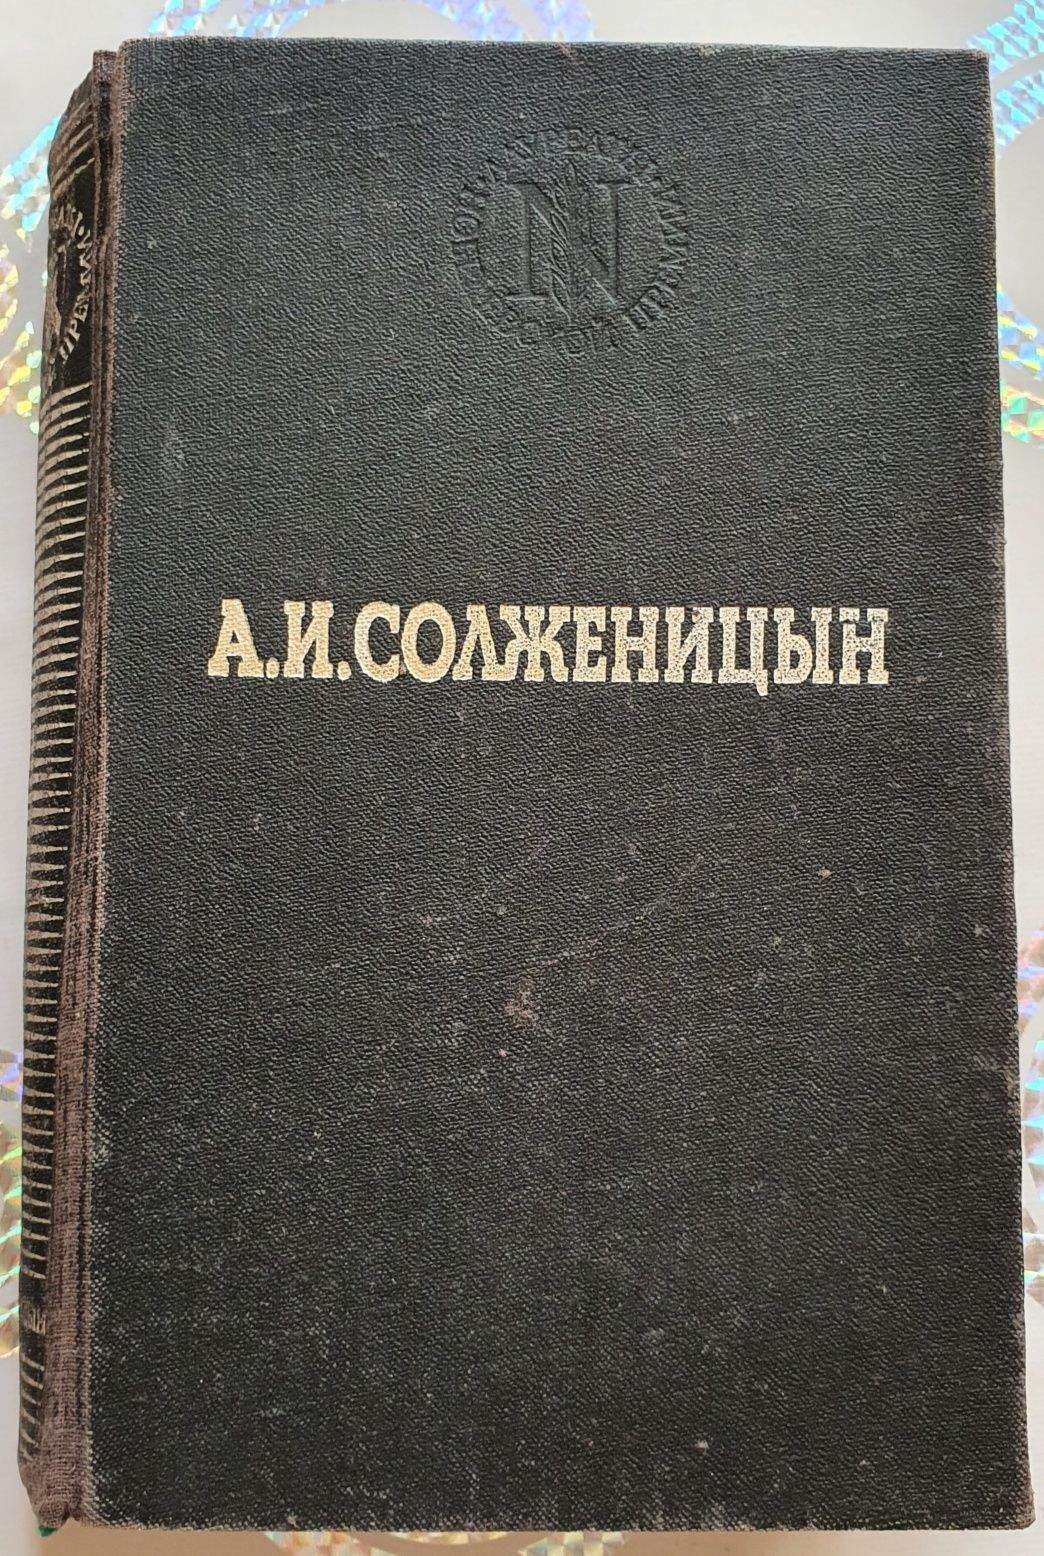 Книга Солженицын "В круге первом"